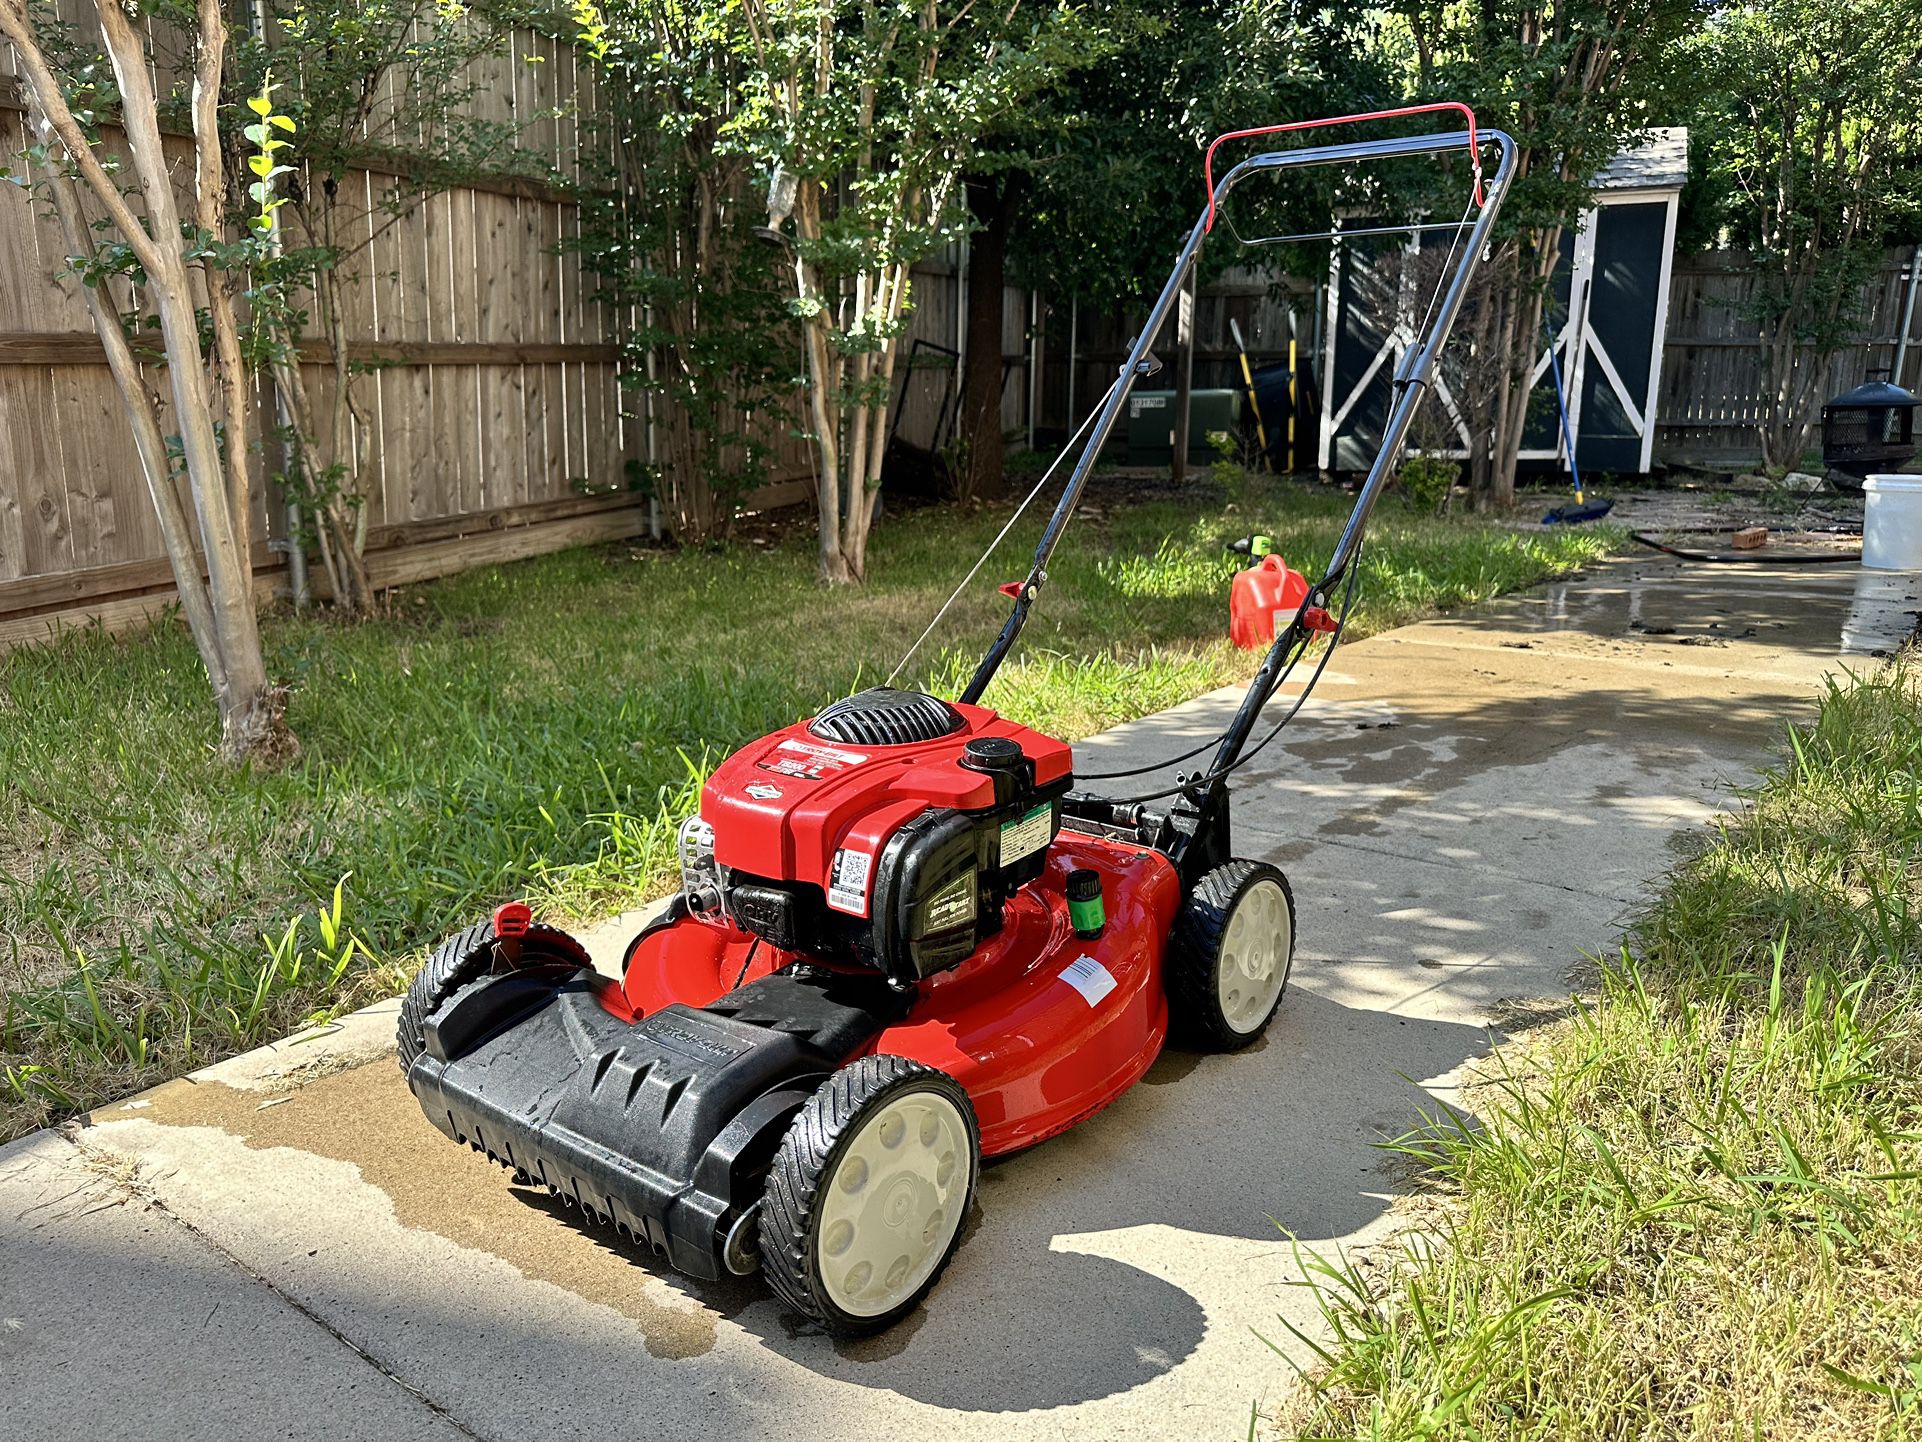 Troy Bilt Self Propelled Lawn Mower